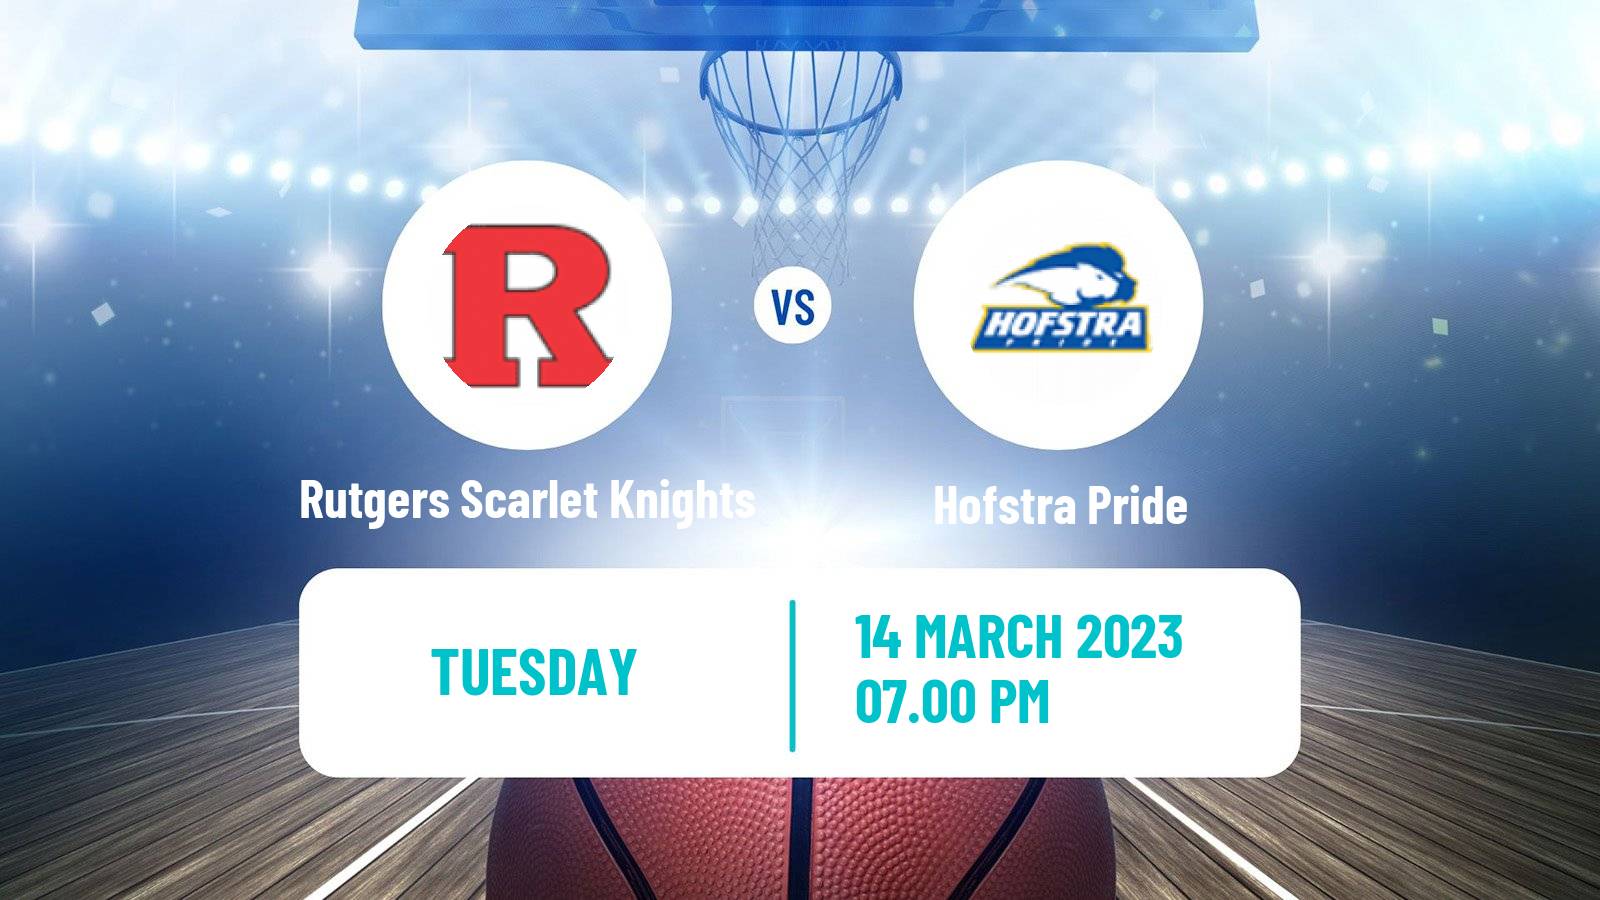 Basketball NIT Rutgers Scarlet Knights - Hofstra Pride